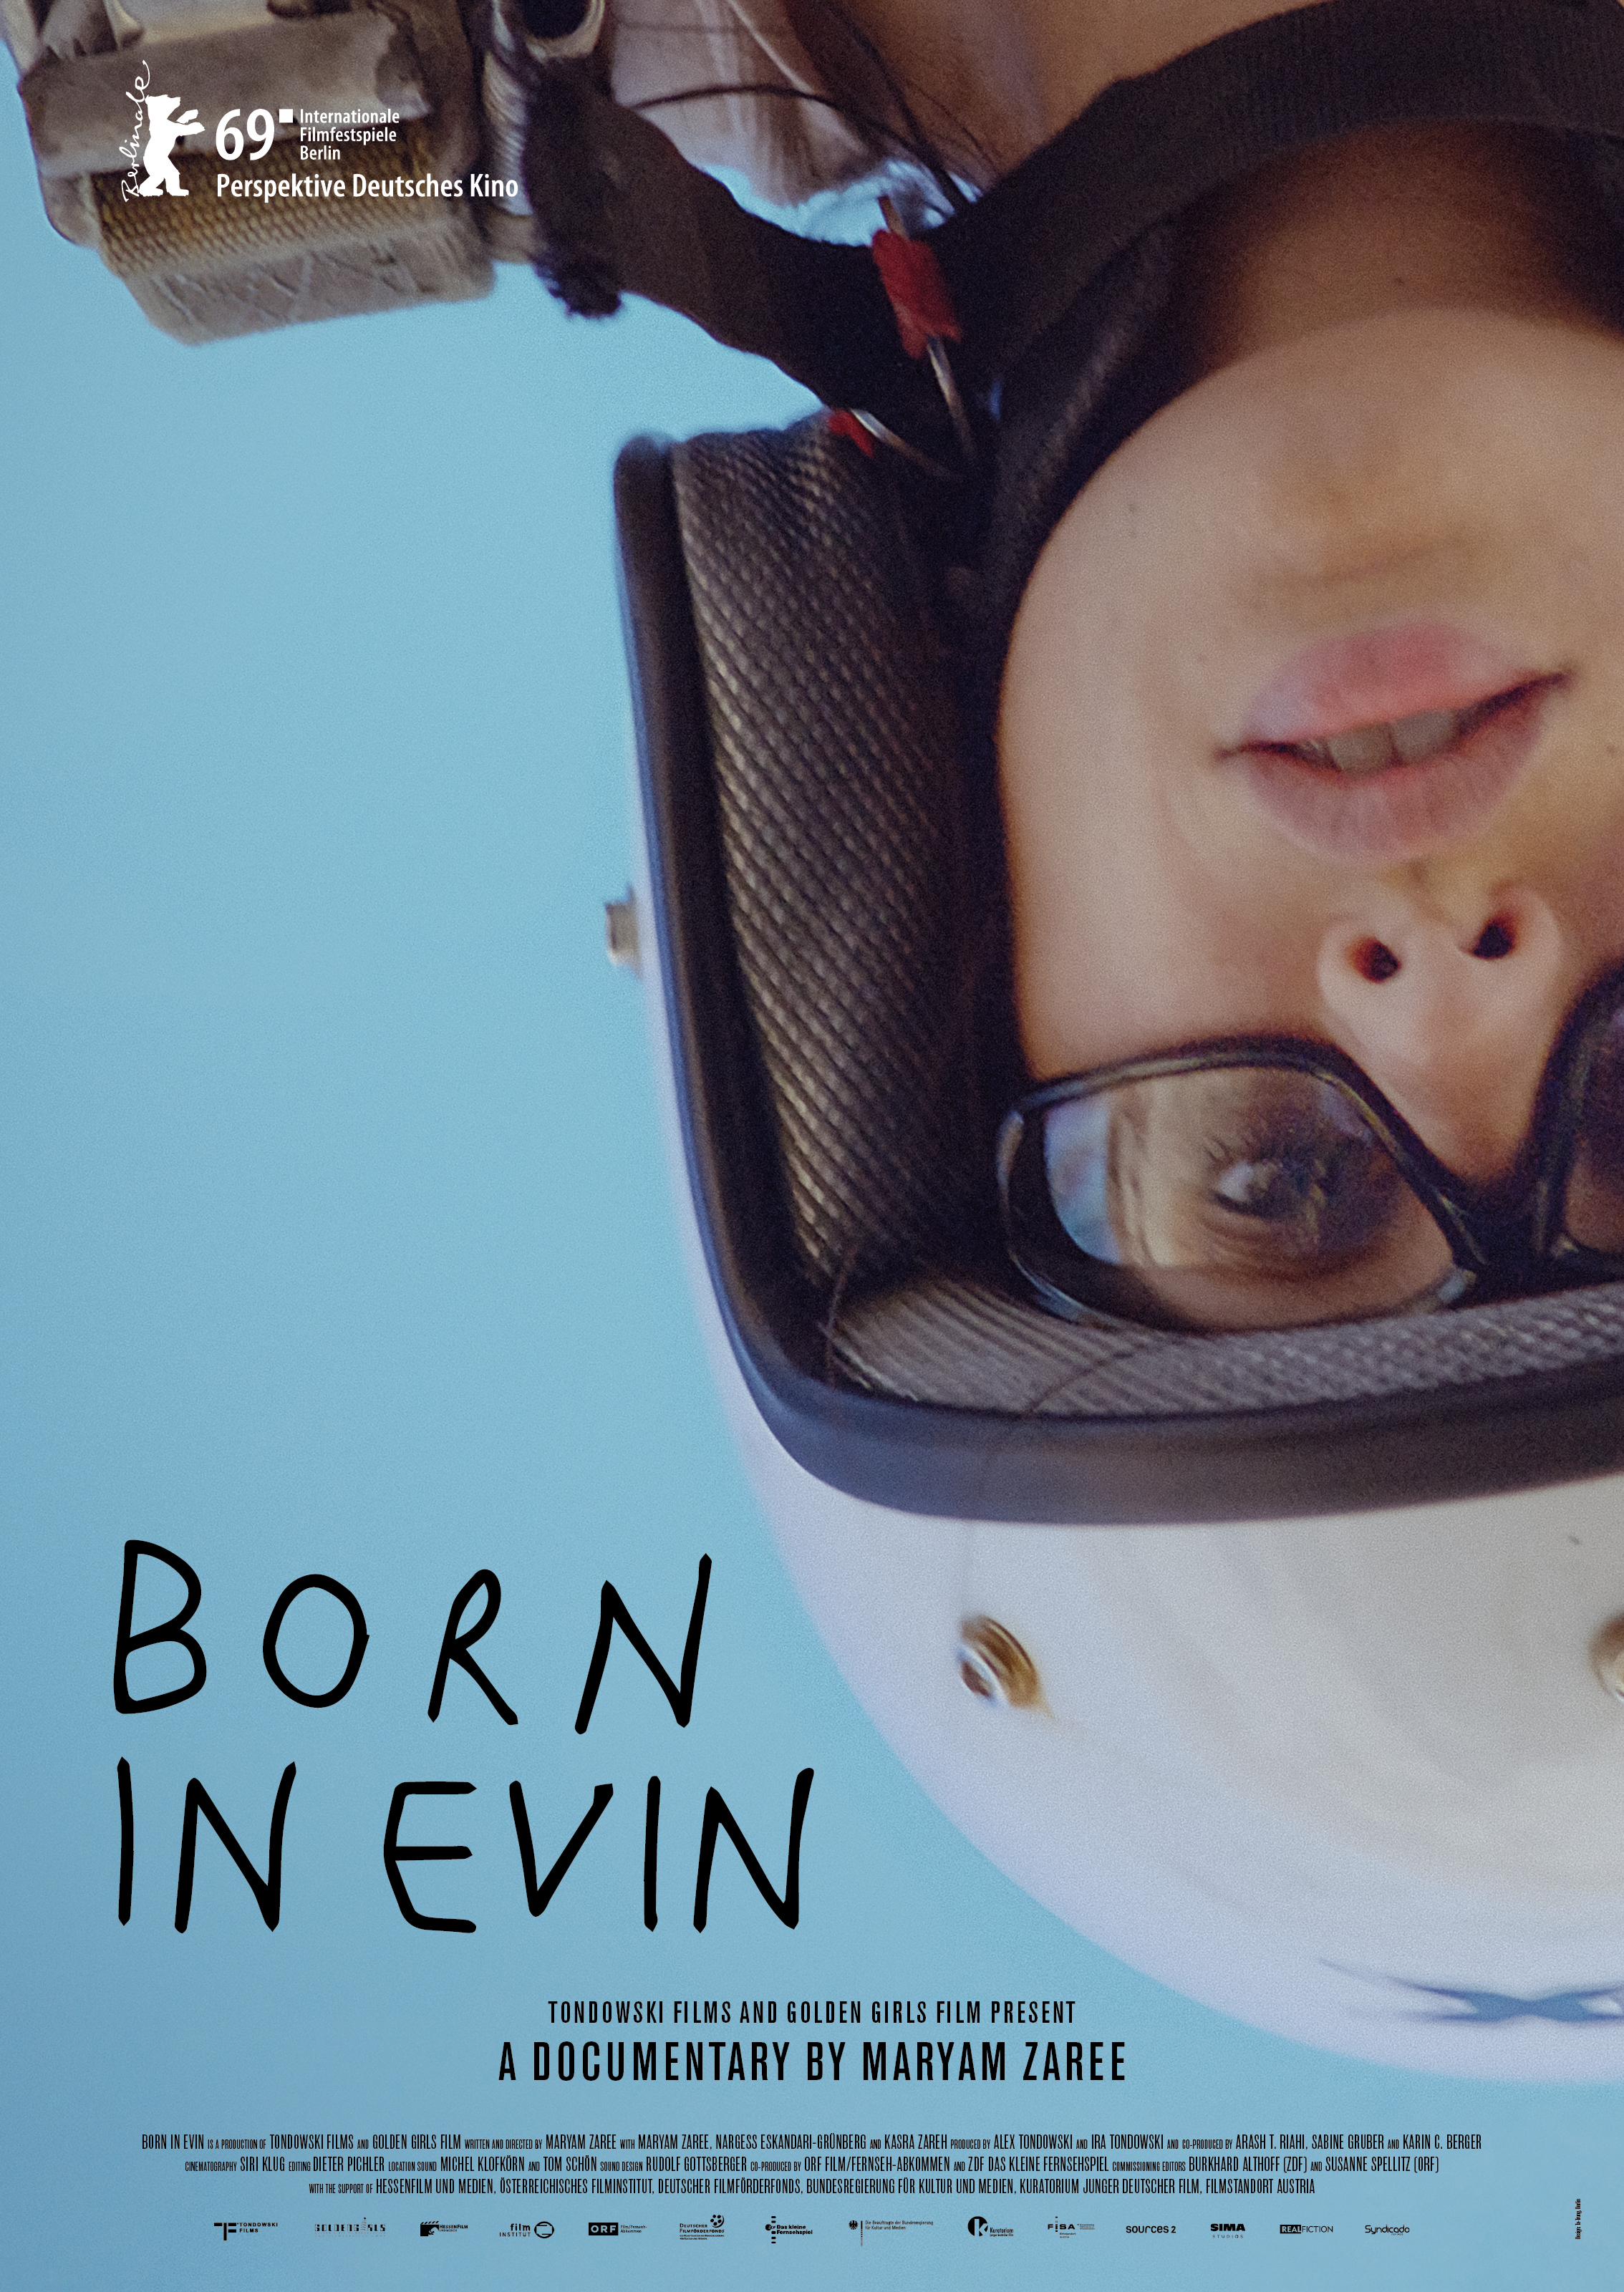 Nonton film Born in Evin layarkaca21 indoxx1 ganool online streaming terbaru